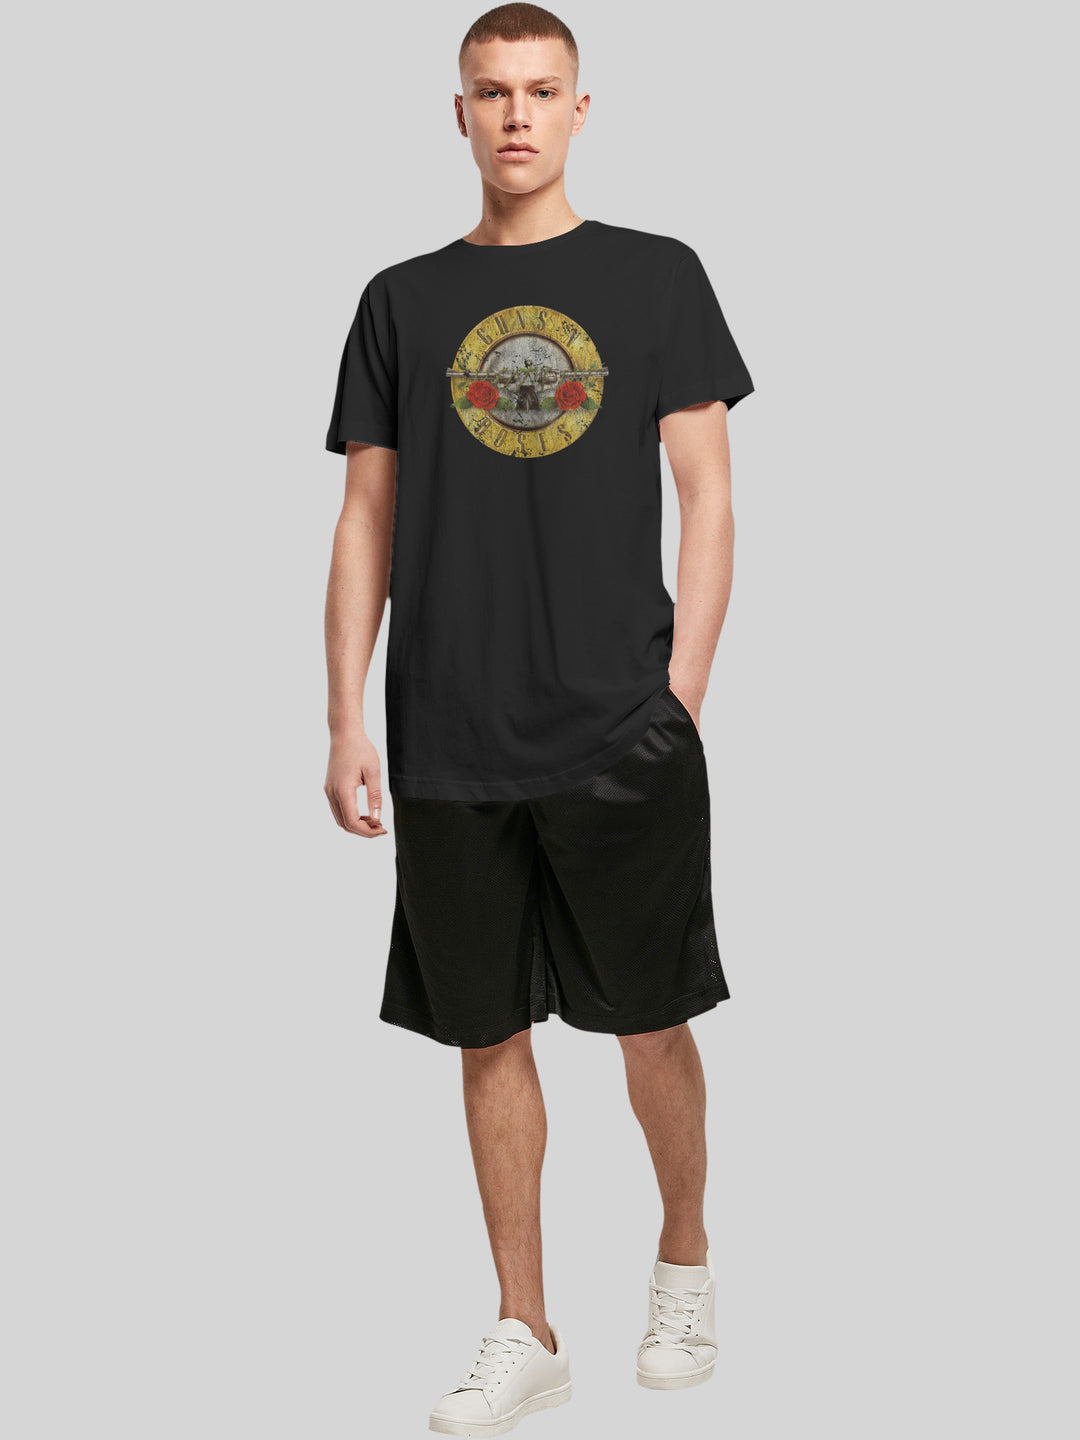 Guns 'n' Roses T-Shirt | Vintage Classic Logo | Extra Long Men T Shirt